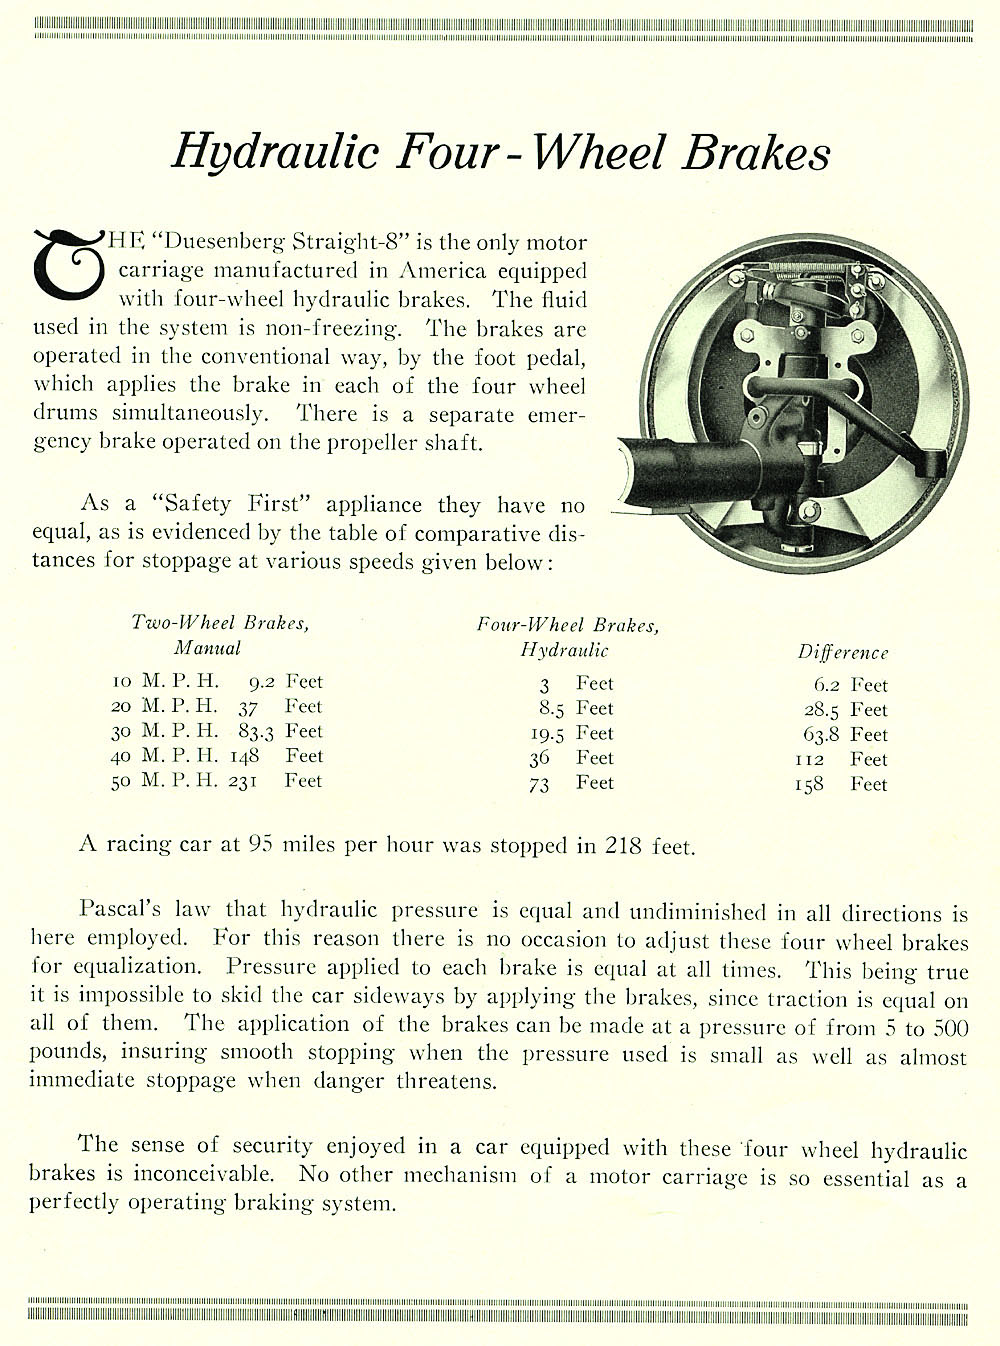 1922 Duesenberg Model A Brochure Page 1